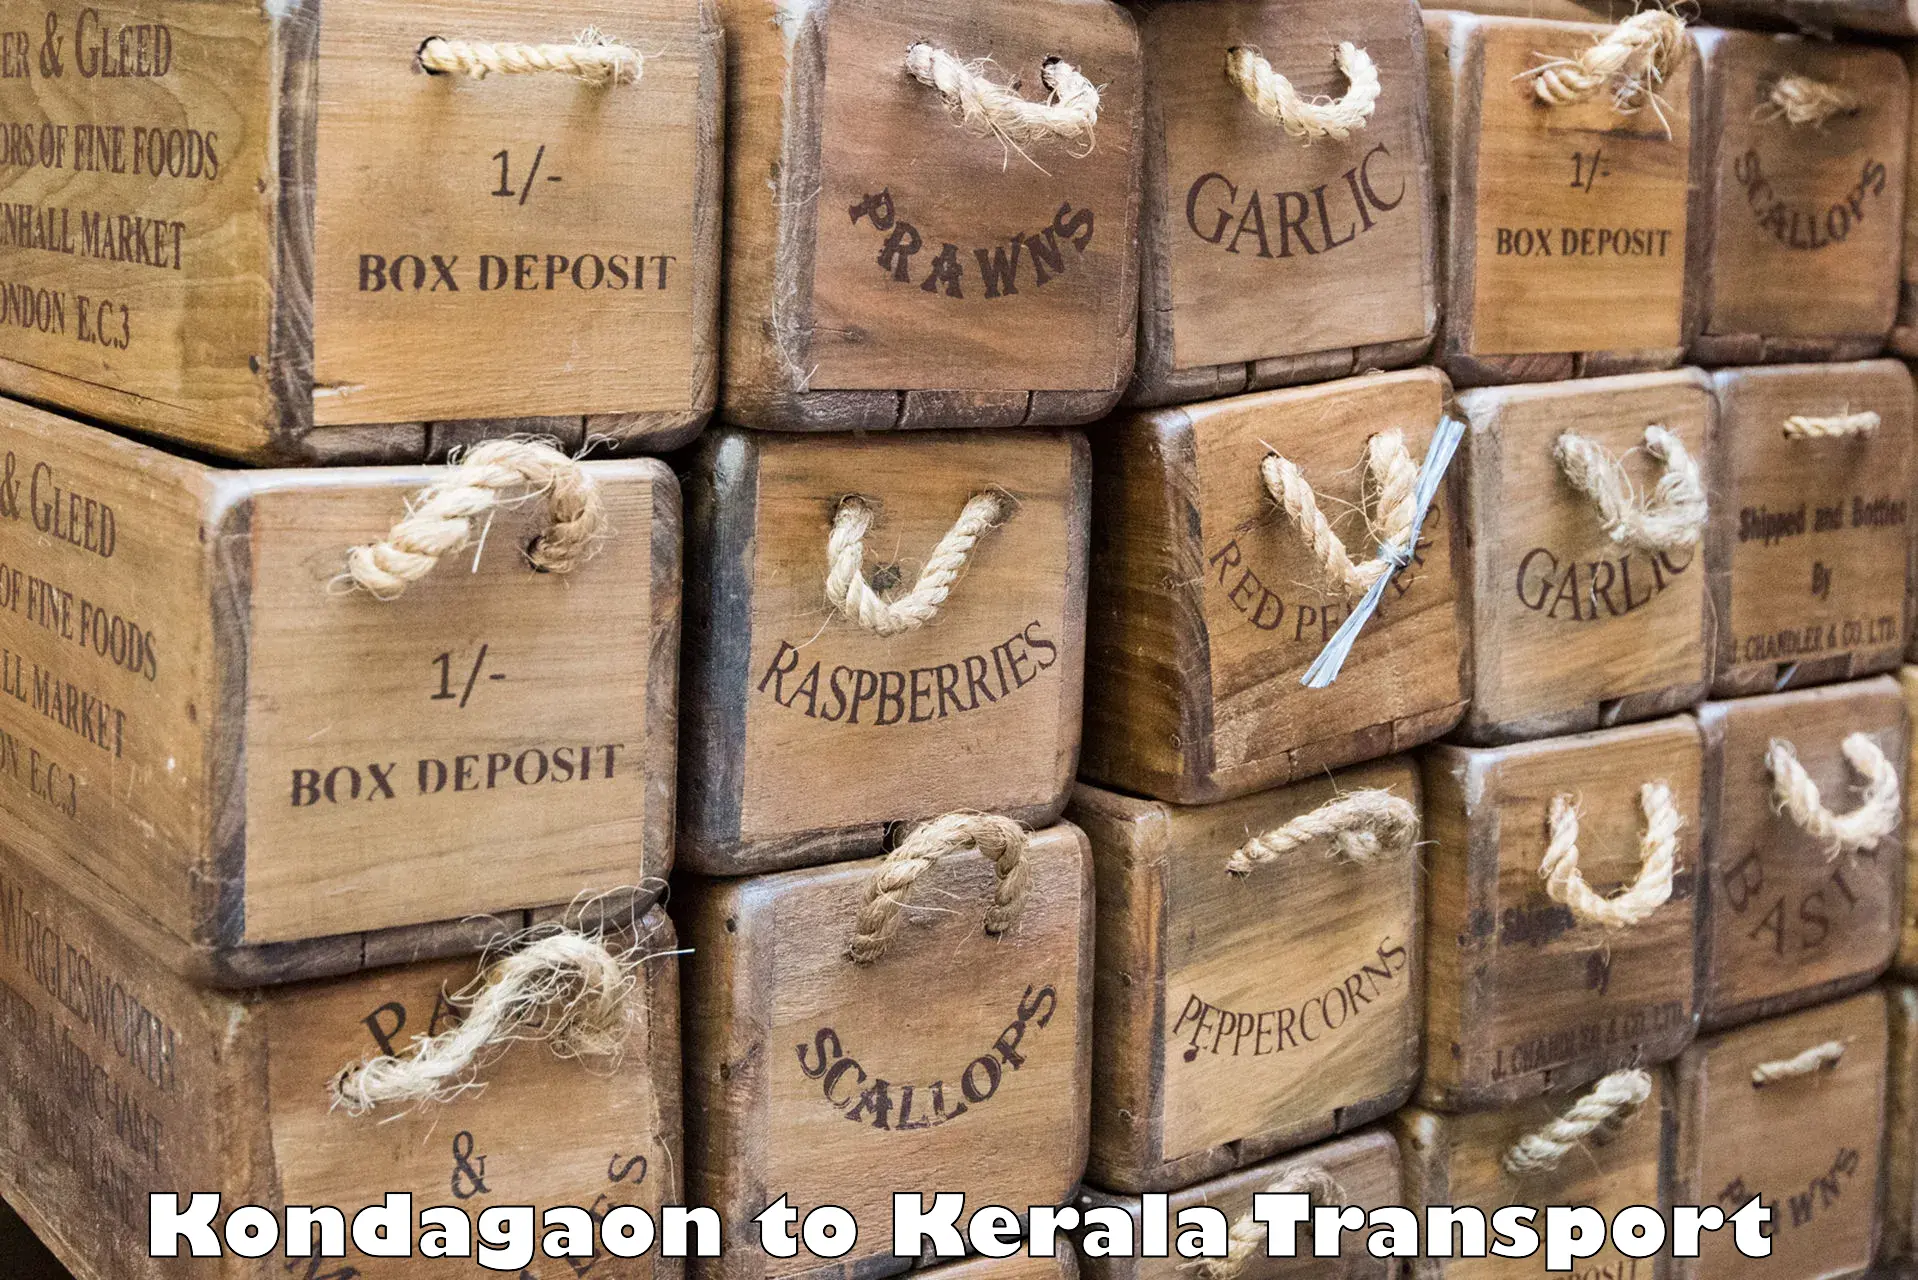 Two wheeler transport services Kondagaon to Kakkur